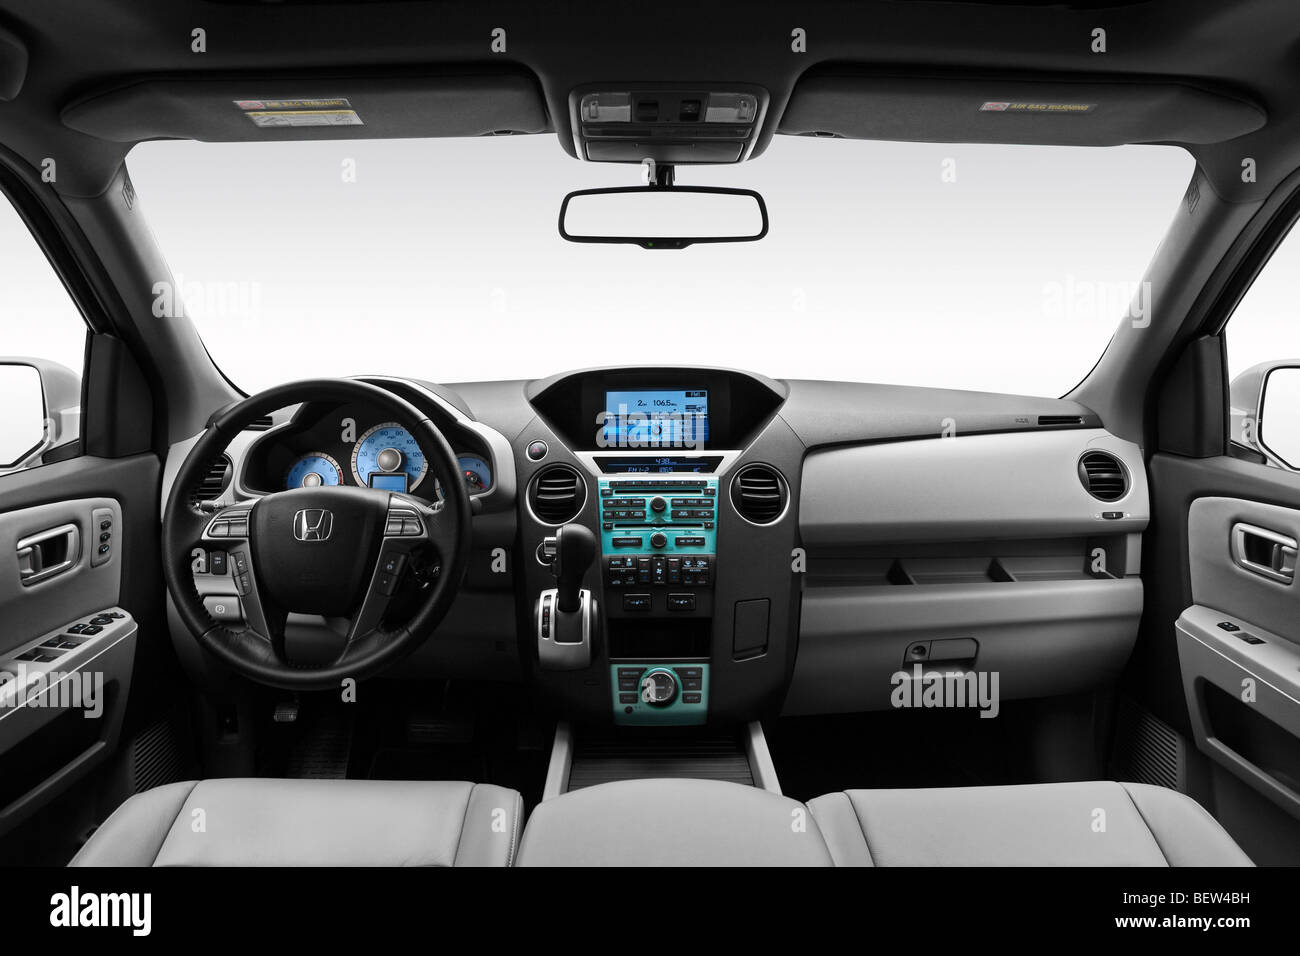 2010 Honda Pilot Touring mit DVD Rear Entertainment System (RES) in Silber - Armaturenbrett, Mittelkonsole, Getriebe Schalthebel Ansicht Stockfoto